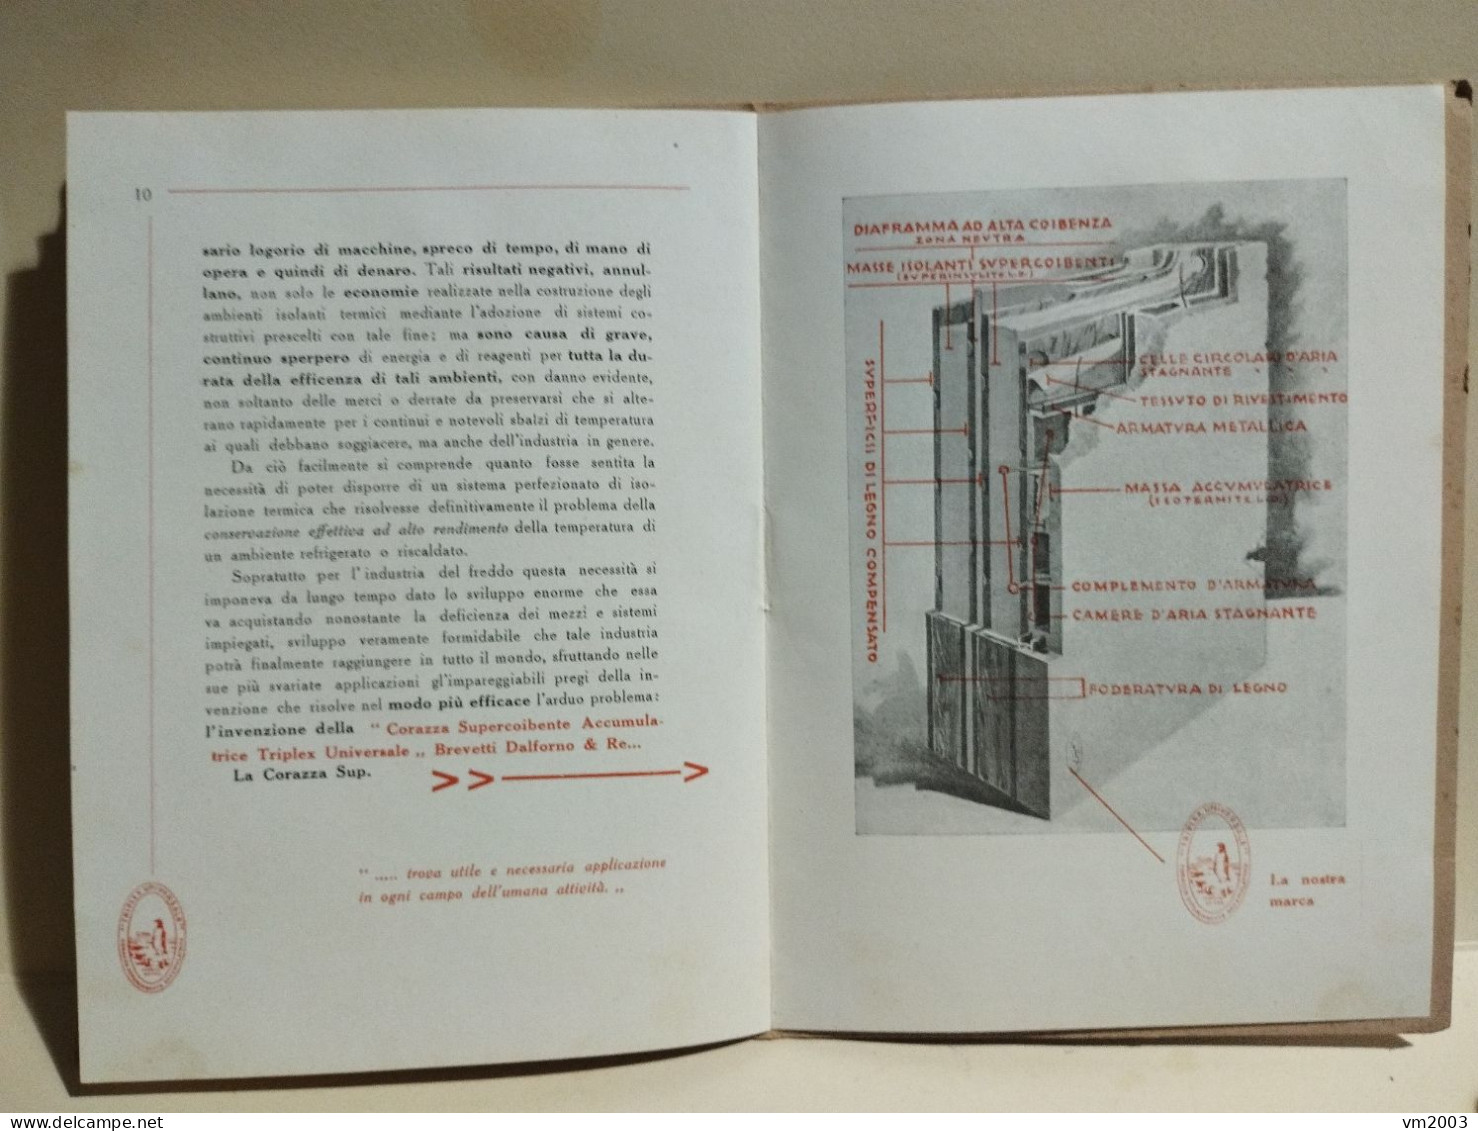 Brochure advertising pubblicitario BREVETTI DALFORNO & RE Corazza TRIPLEX UNIVERSALE. Roma 1924-25